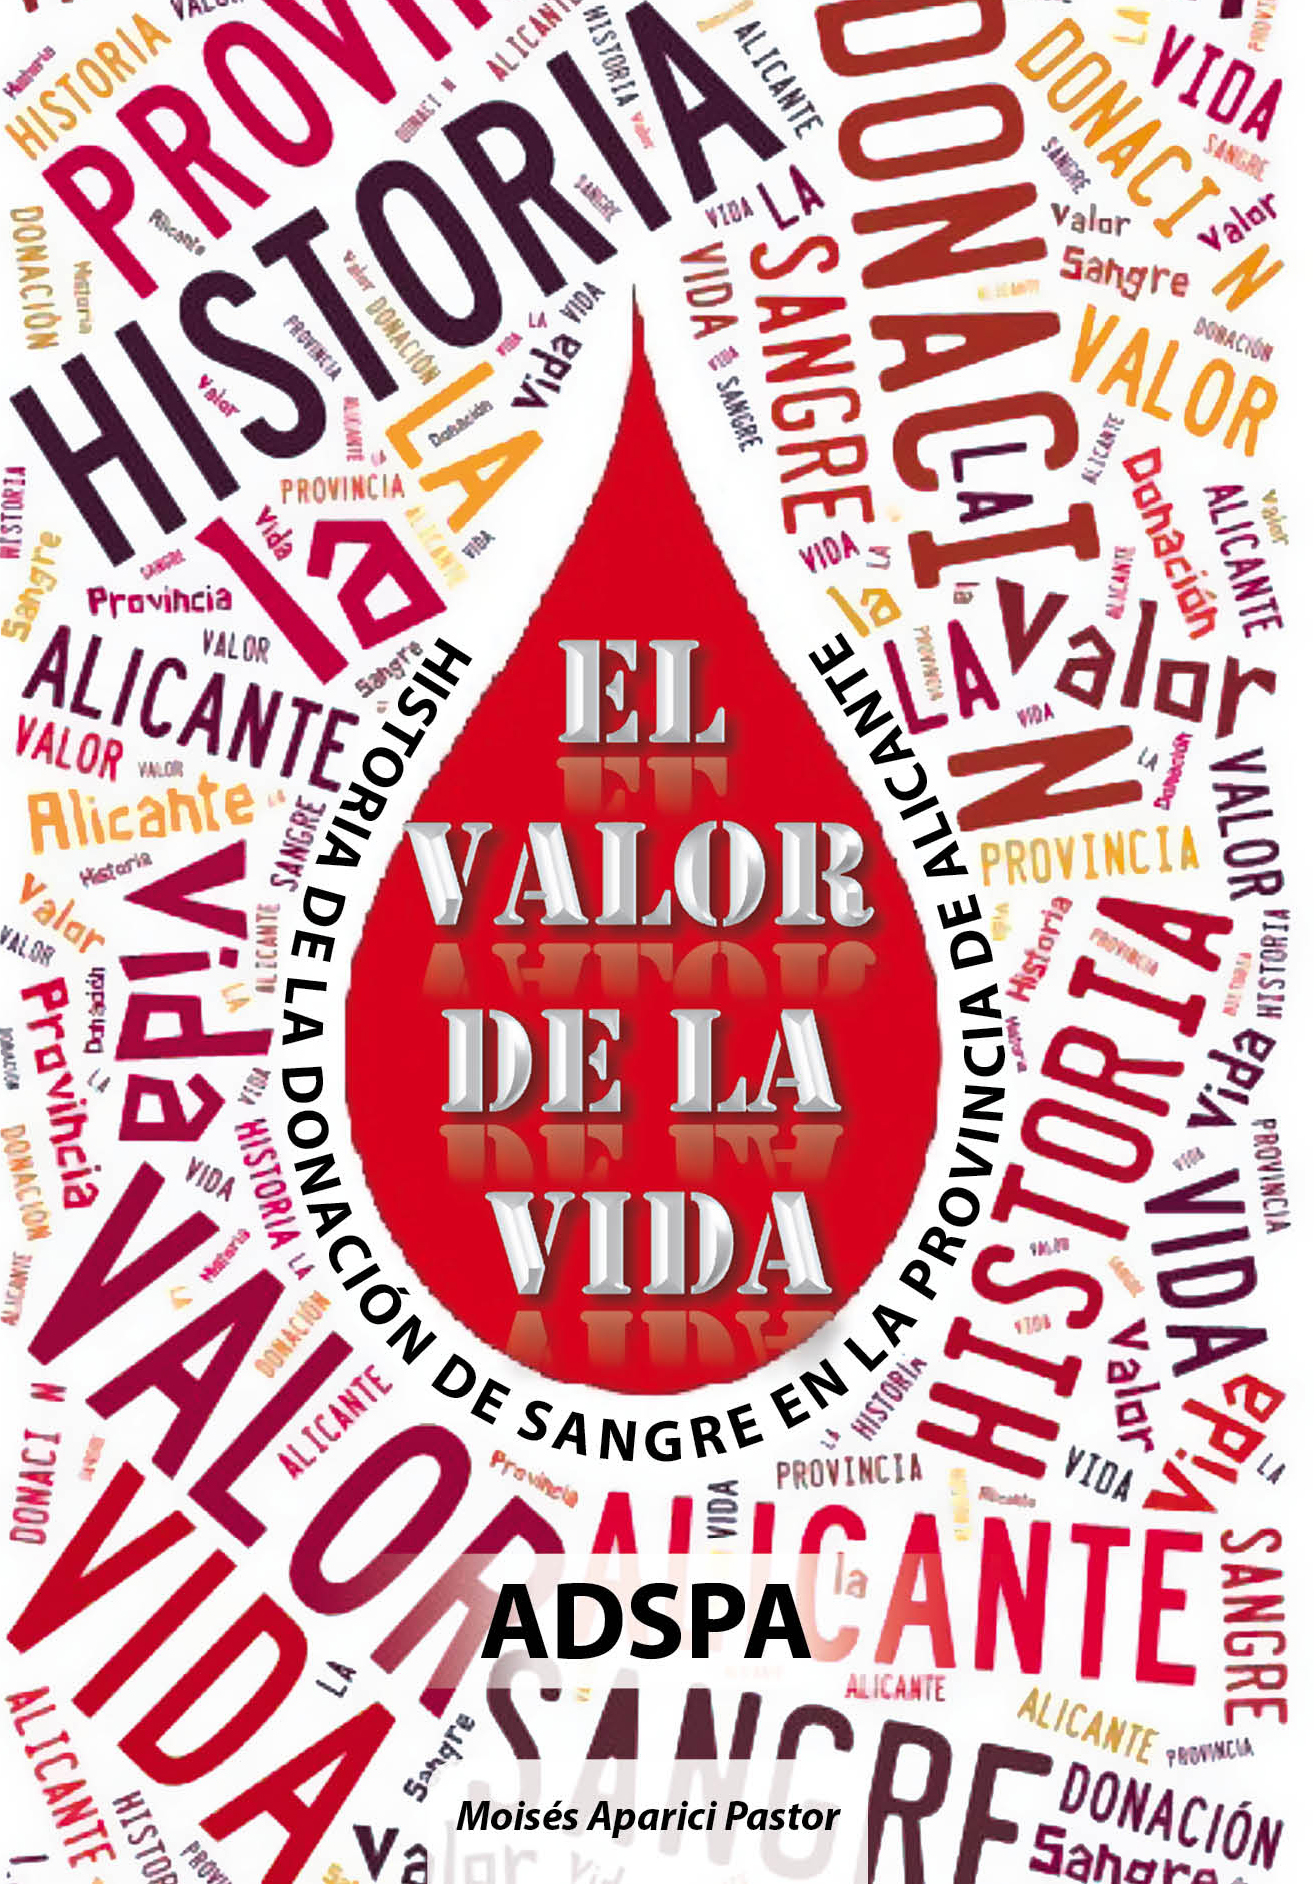 EL VALOR DE LA VIDA<BR>
Historia de la donación de sangre en la provincia de Alicante